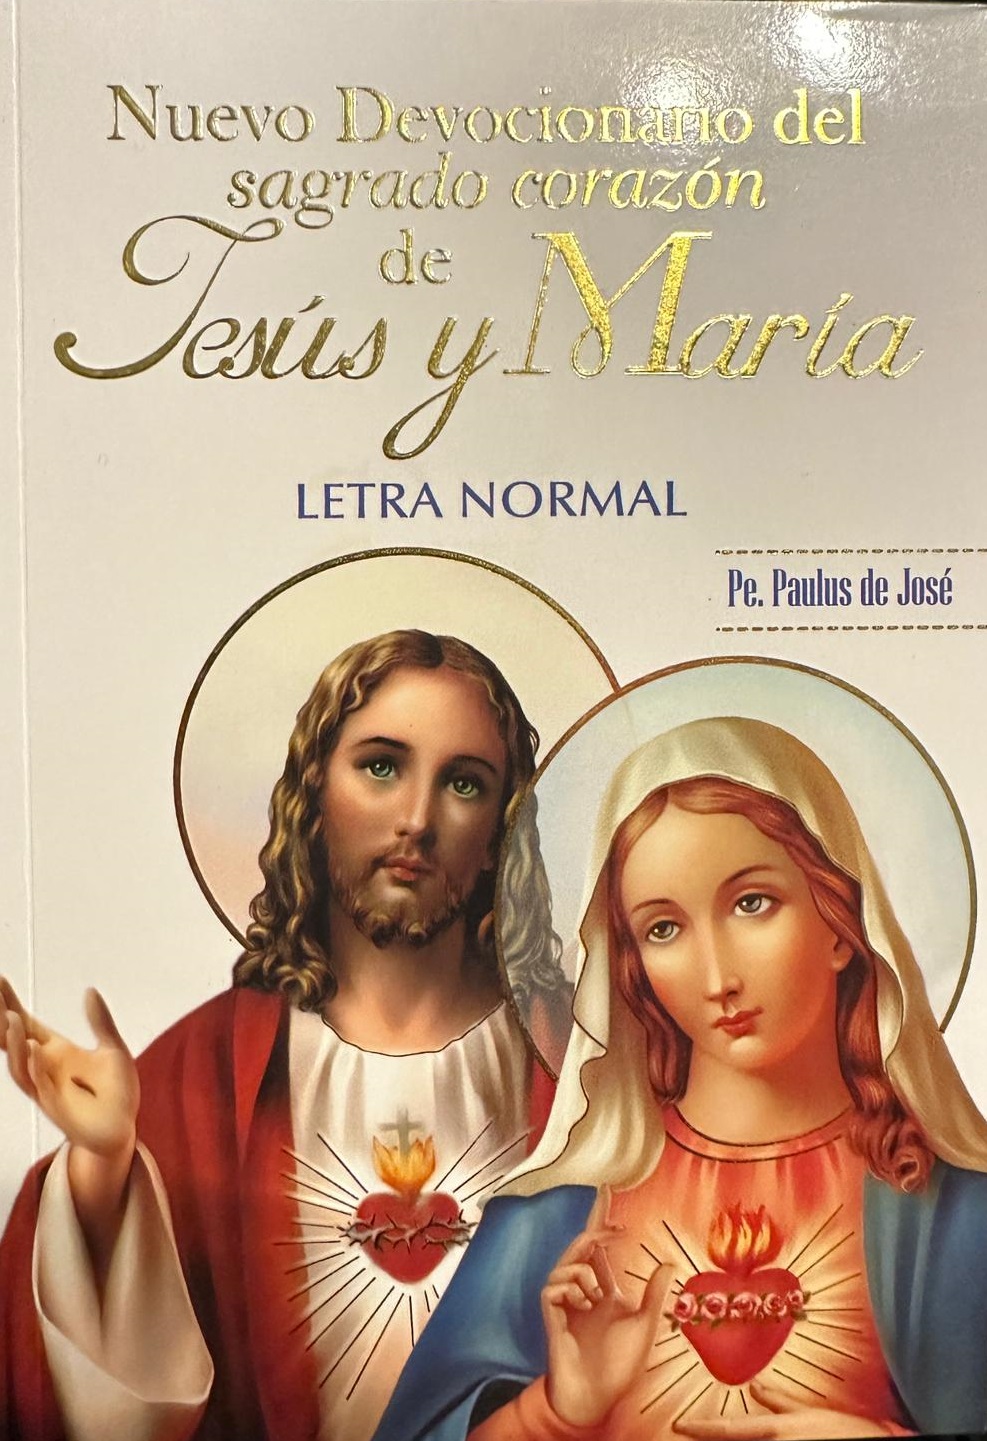 Nuevo Devocionario del sagrado corazón de Jesús y de María